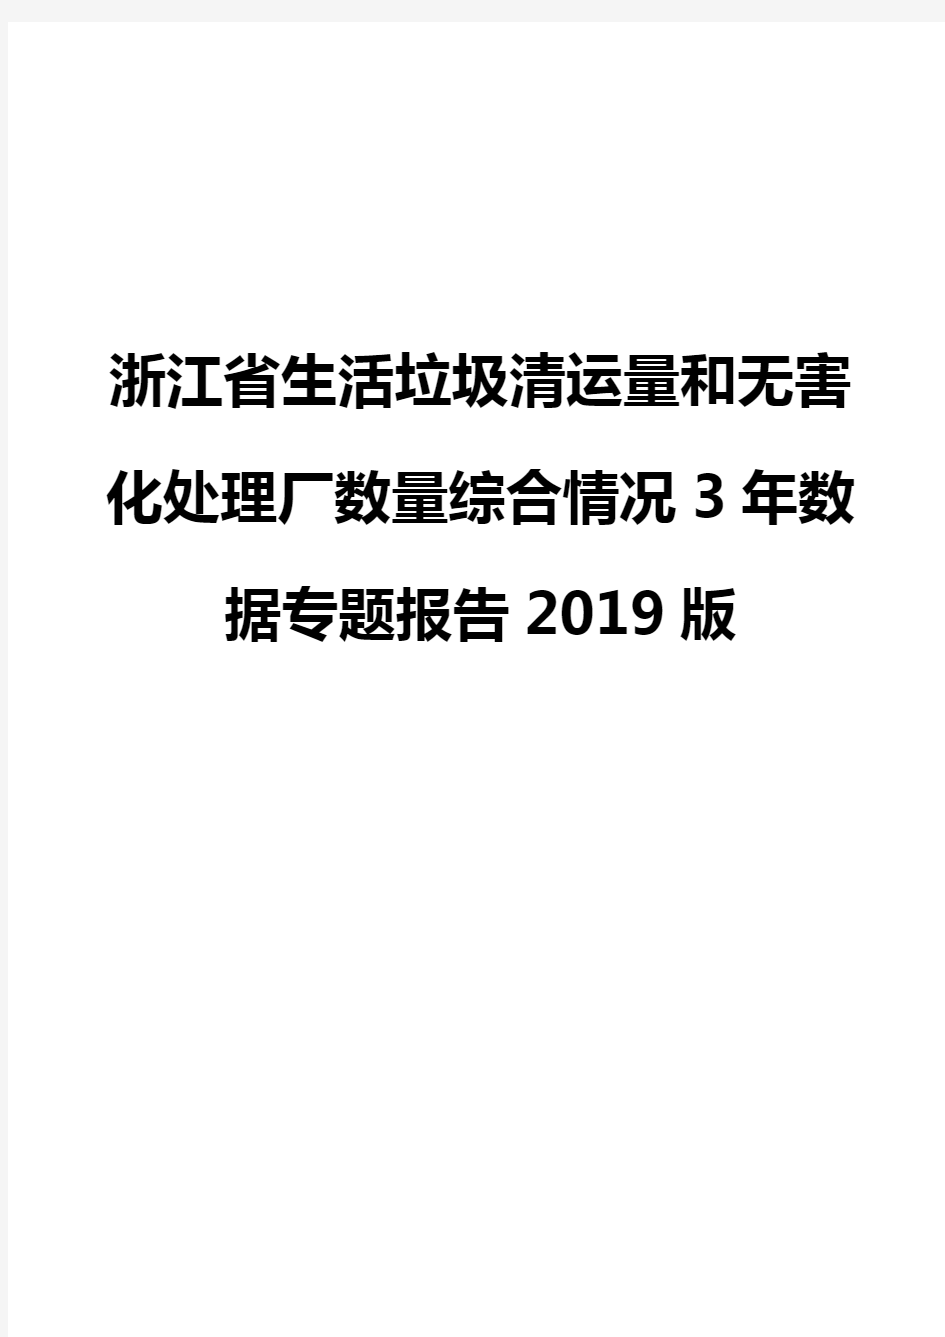 浙江省生活垃圾清运量和无害化处理厂数量综合情况3年数据专题报告2019版